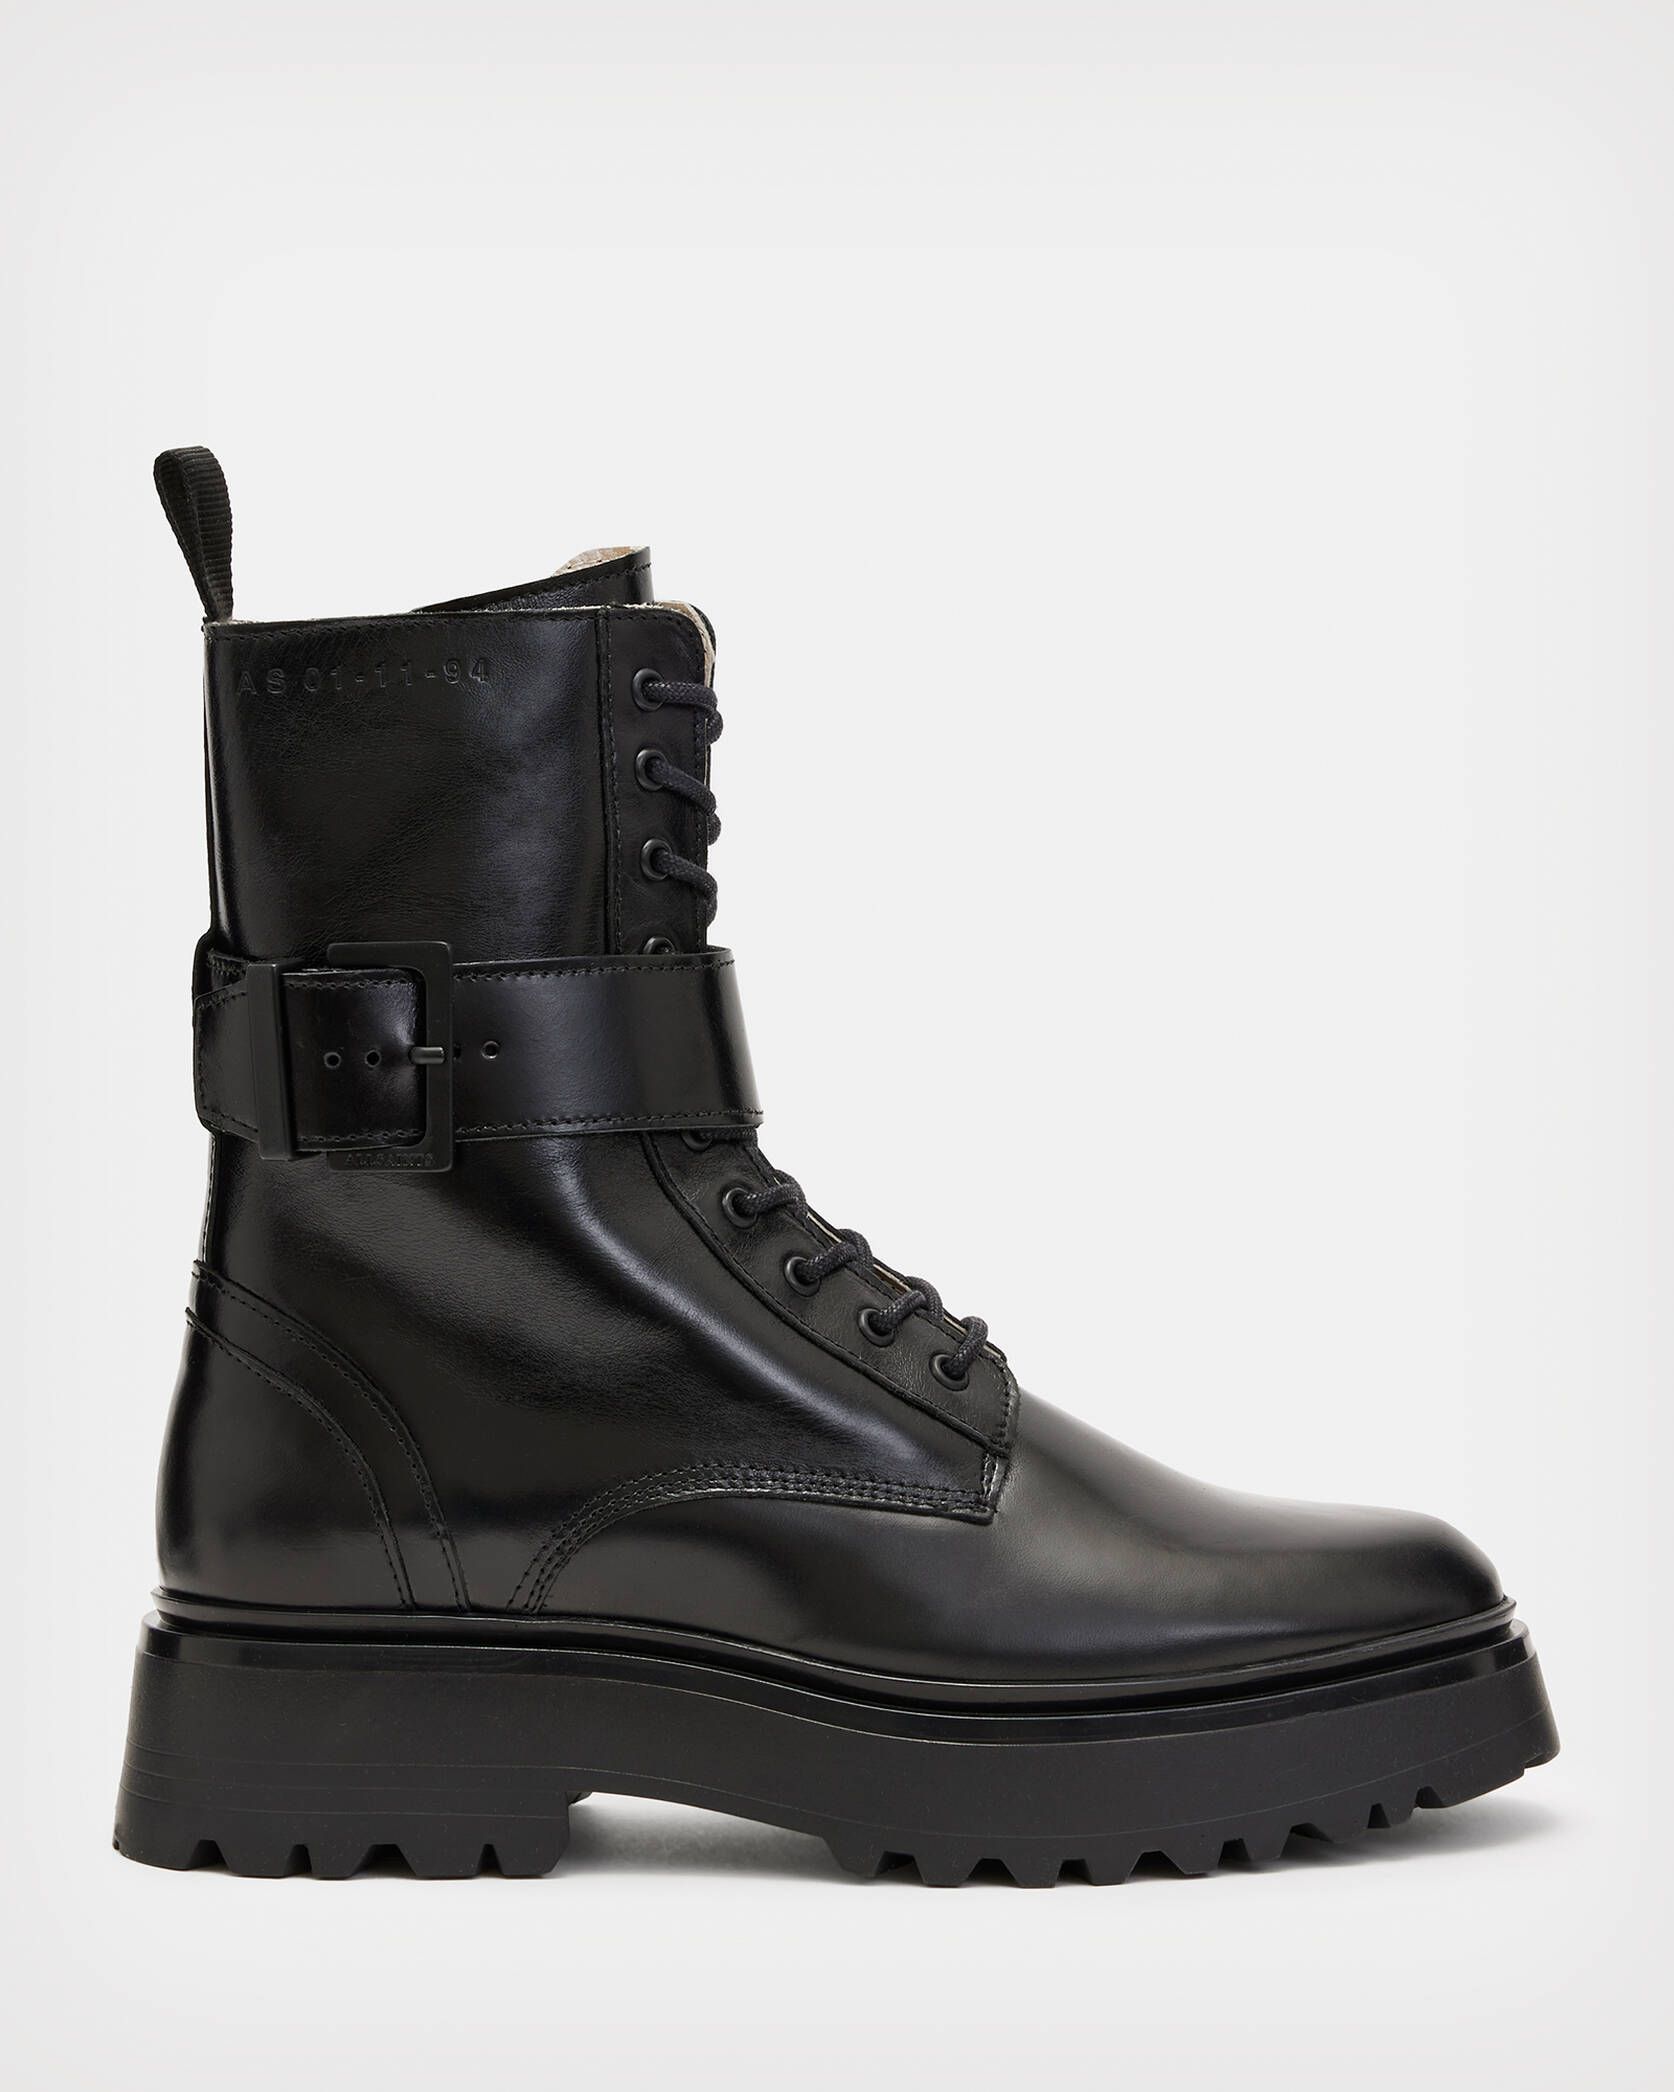 Onyx Leather Boots Black | ALLSAINTS US | AllSaints US